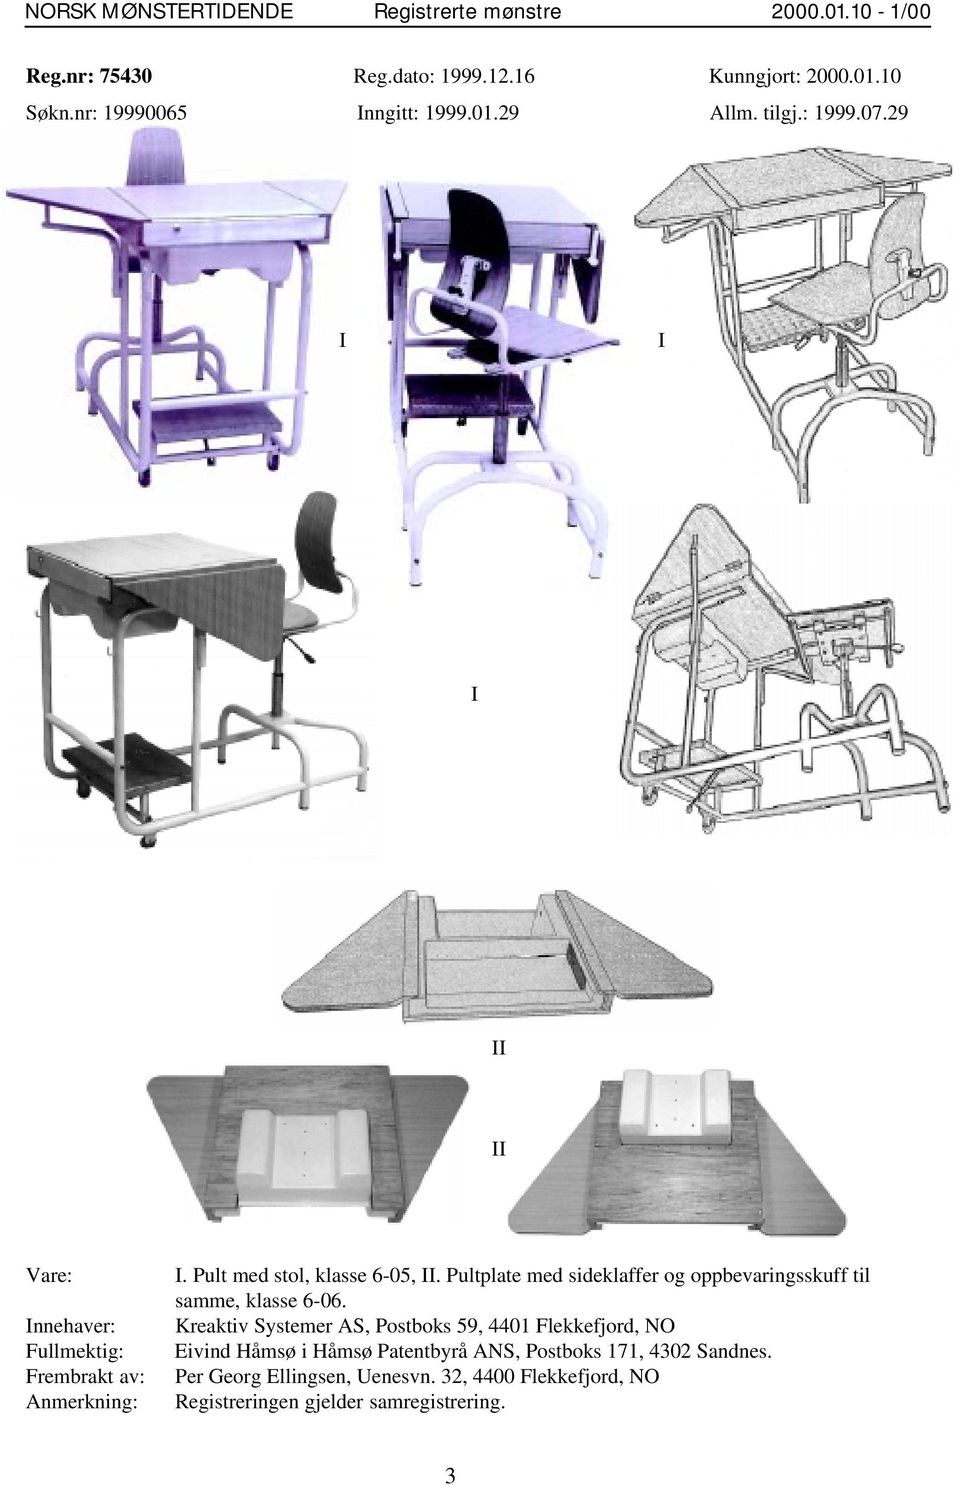 Pult med stol, klasse 6-05, II. Pultplate med sideklaffer og oppbevaringsskuff til samme, klasse 6-06.